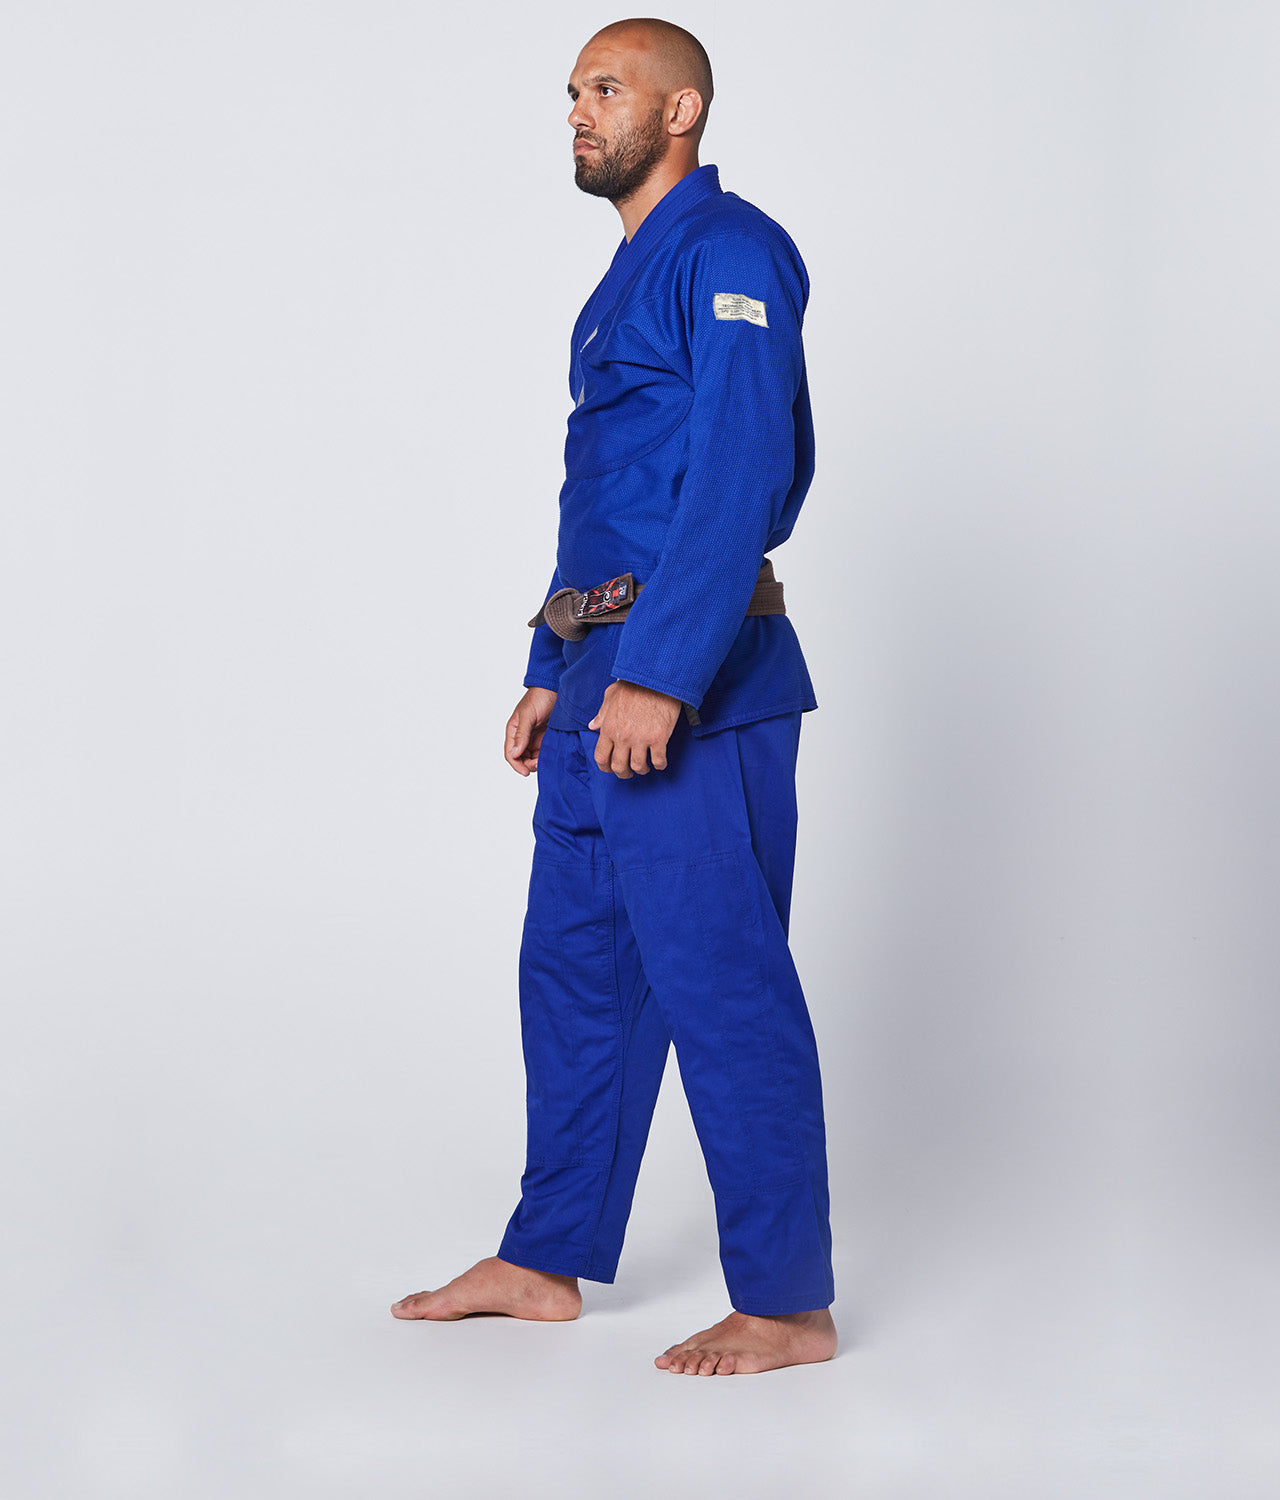 Elite Sports Men's Core Blue Brazilian Jiu Jitsu BJJ Gi Side View